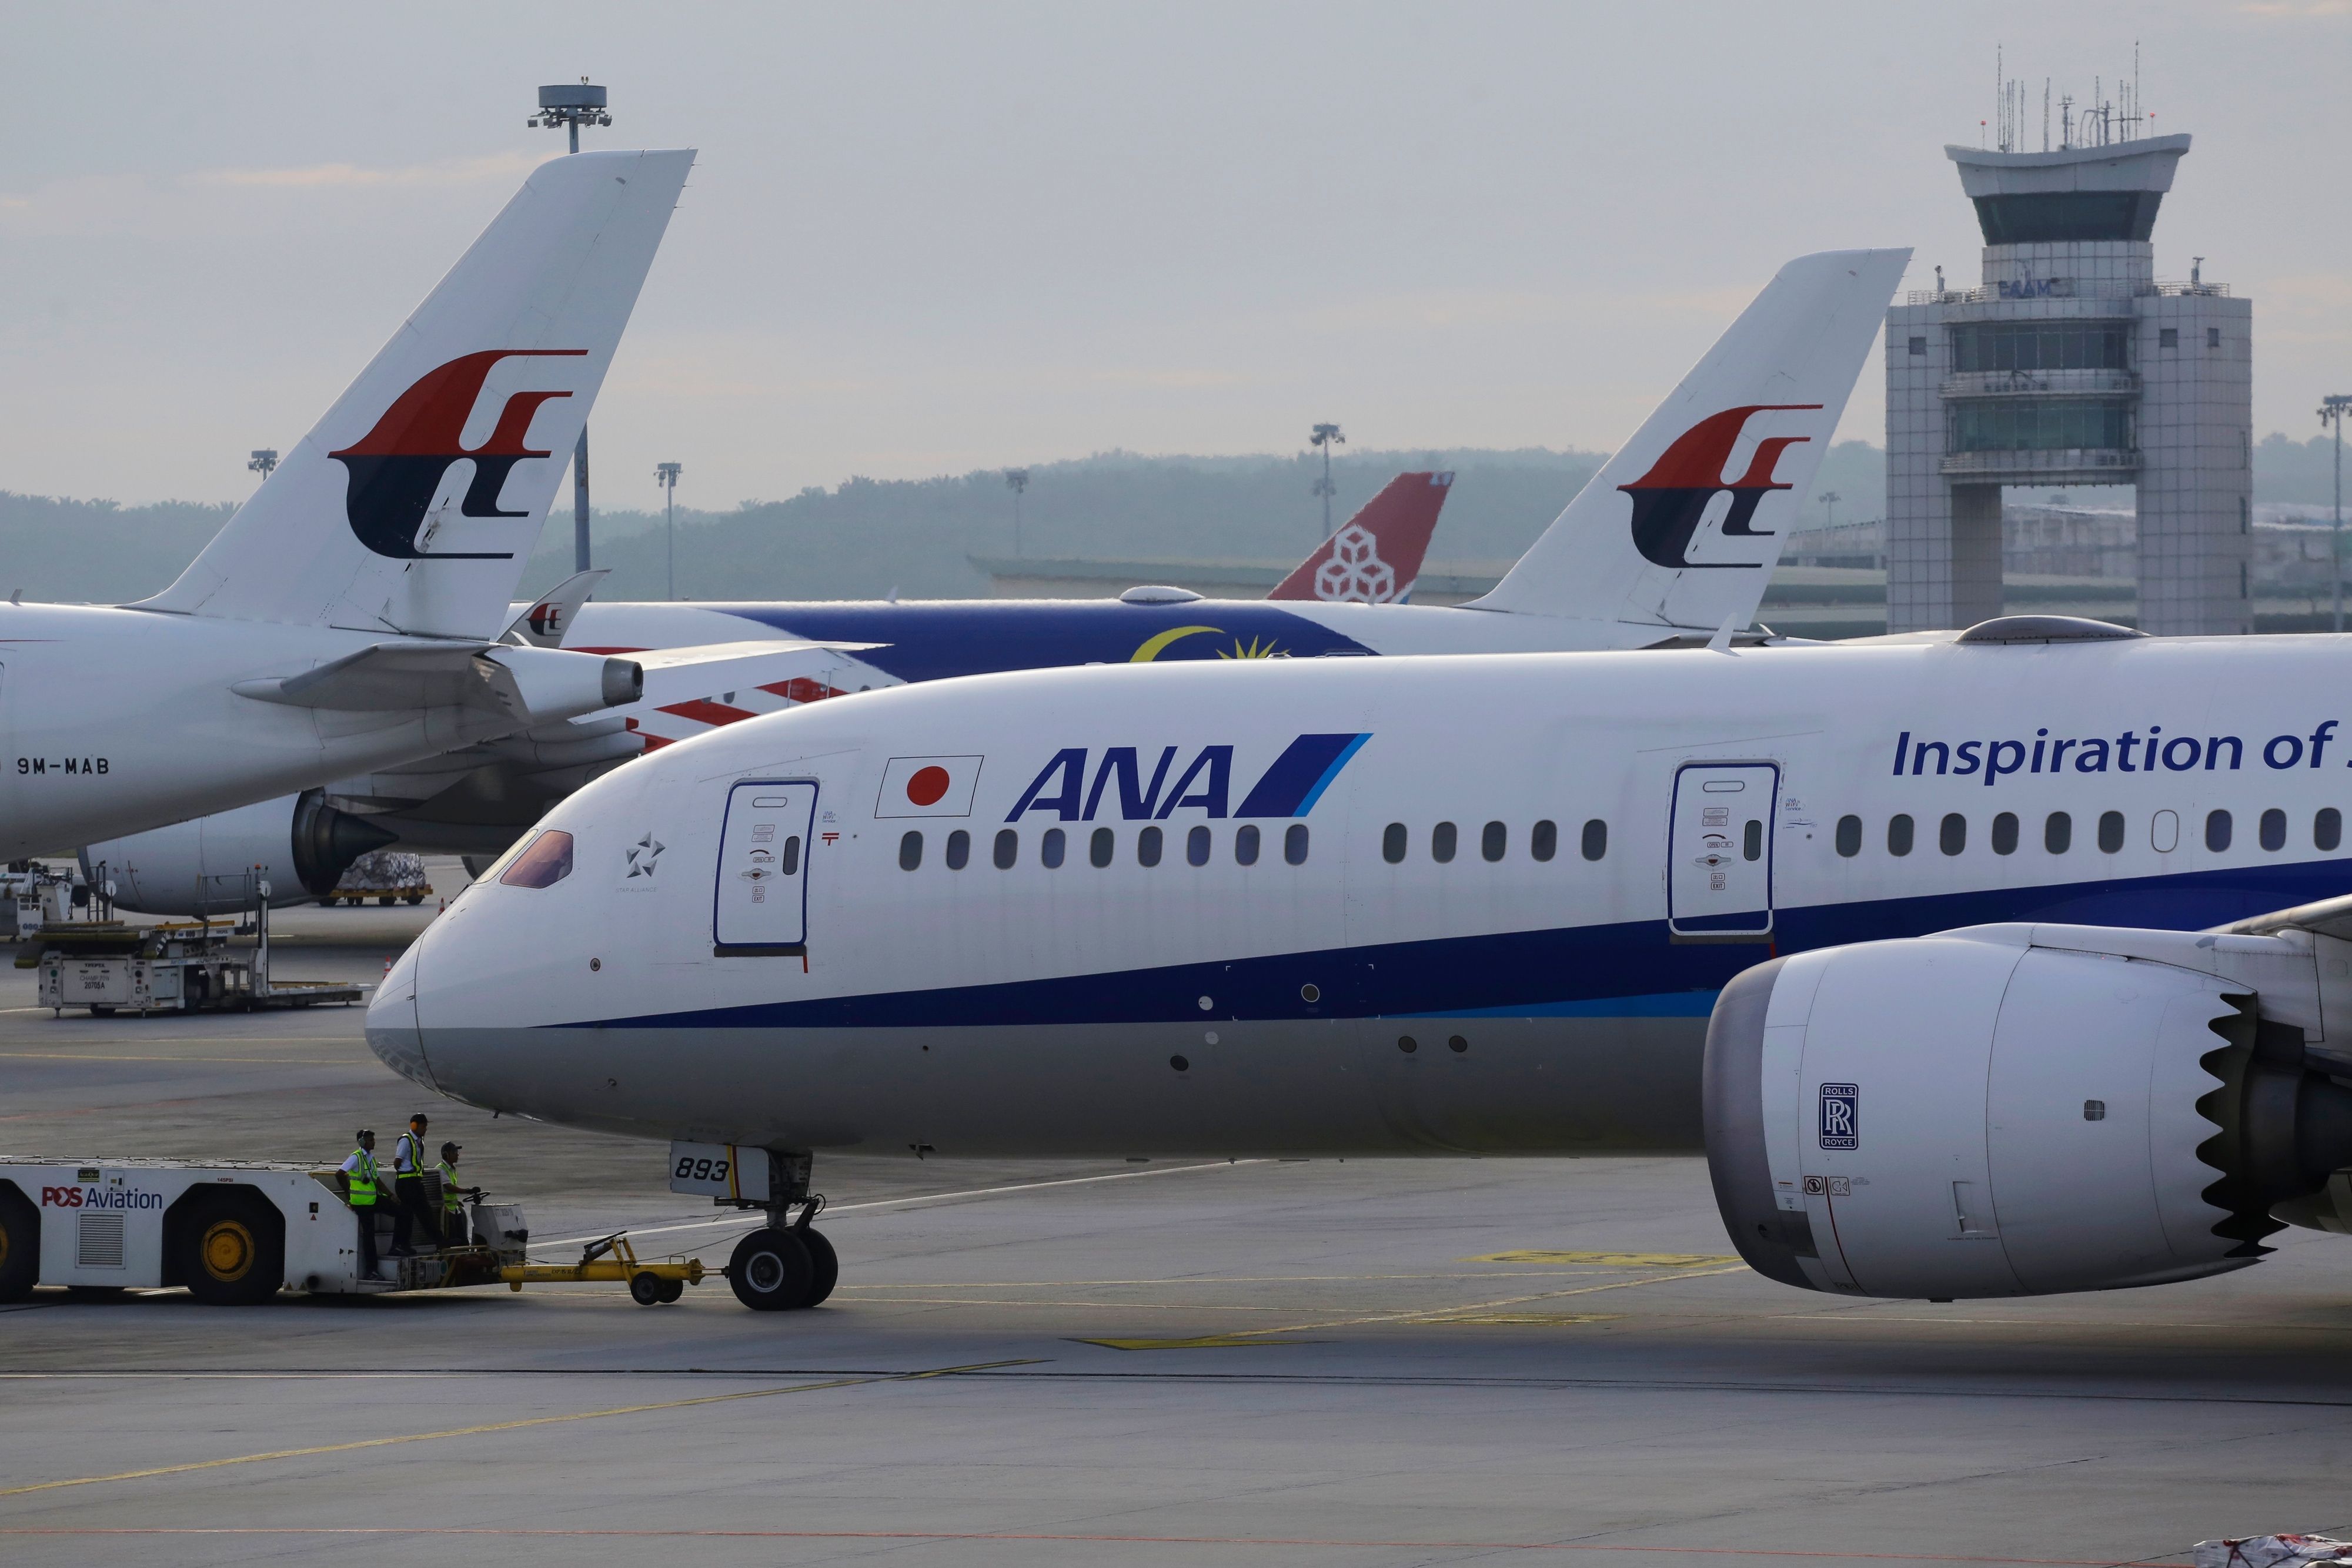 Airplanes at Kuala Lumpur airport